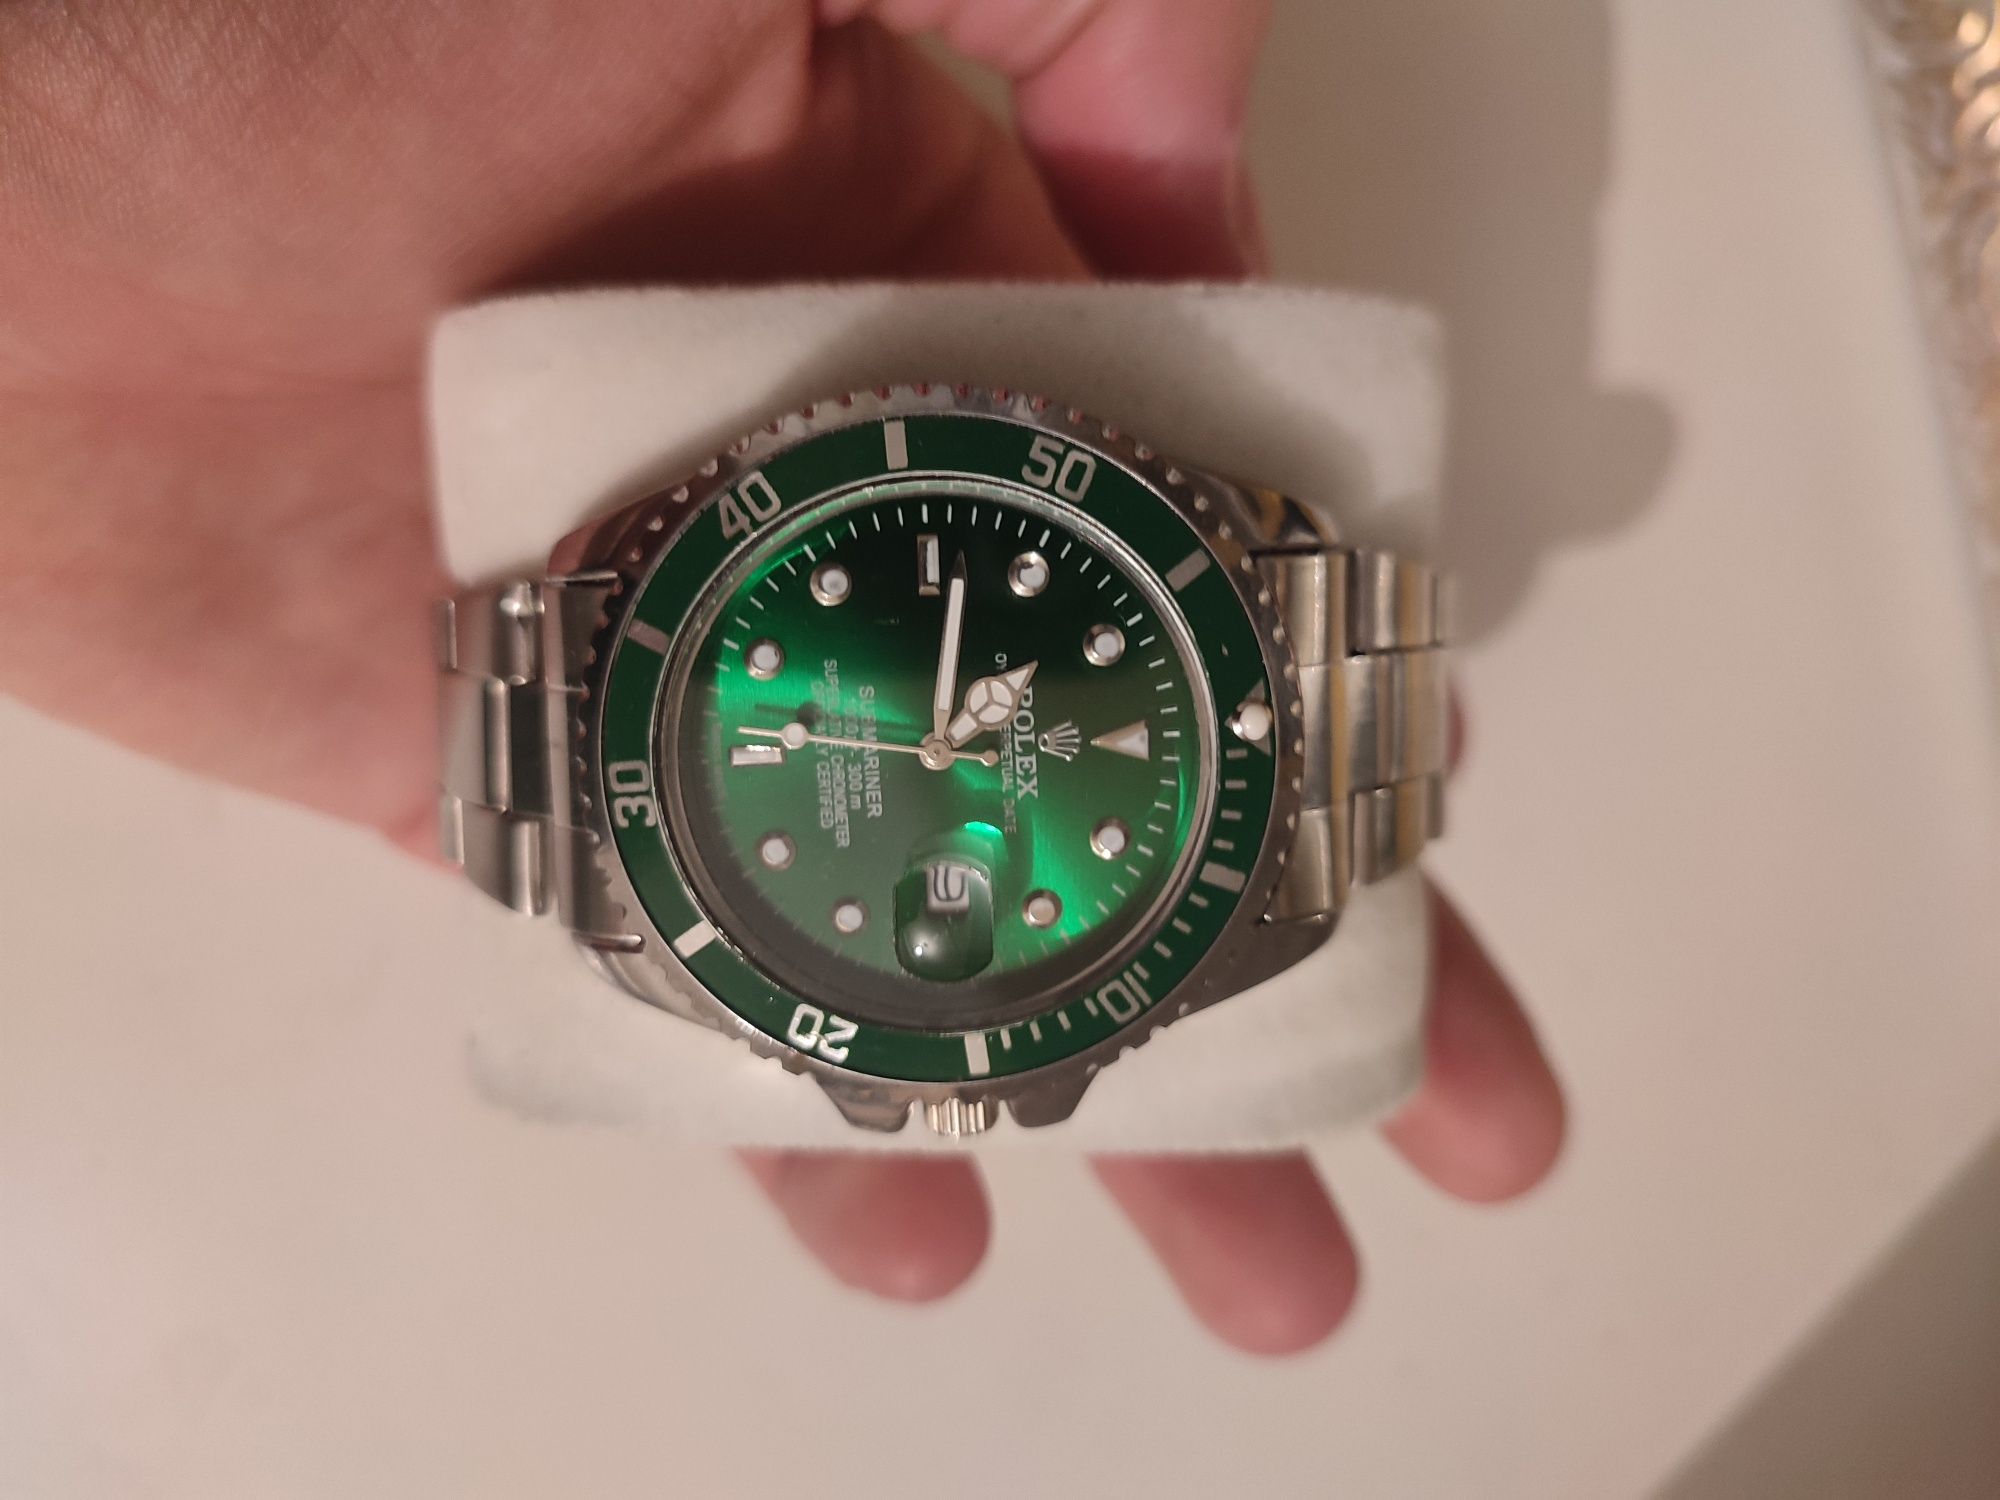 Rolex часы качество нормальное